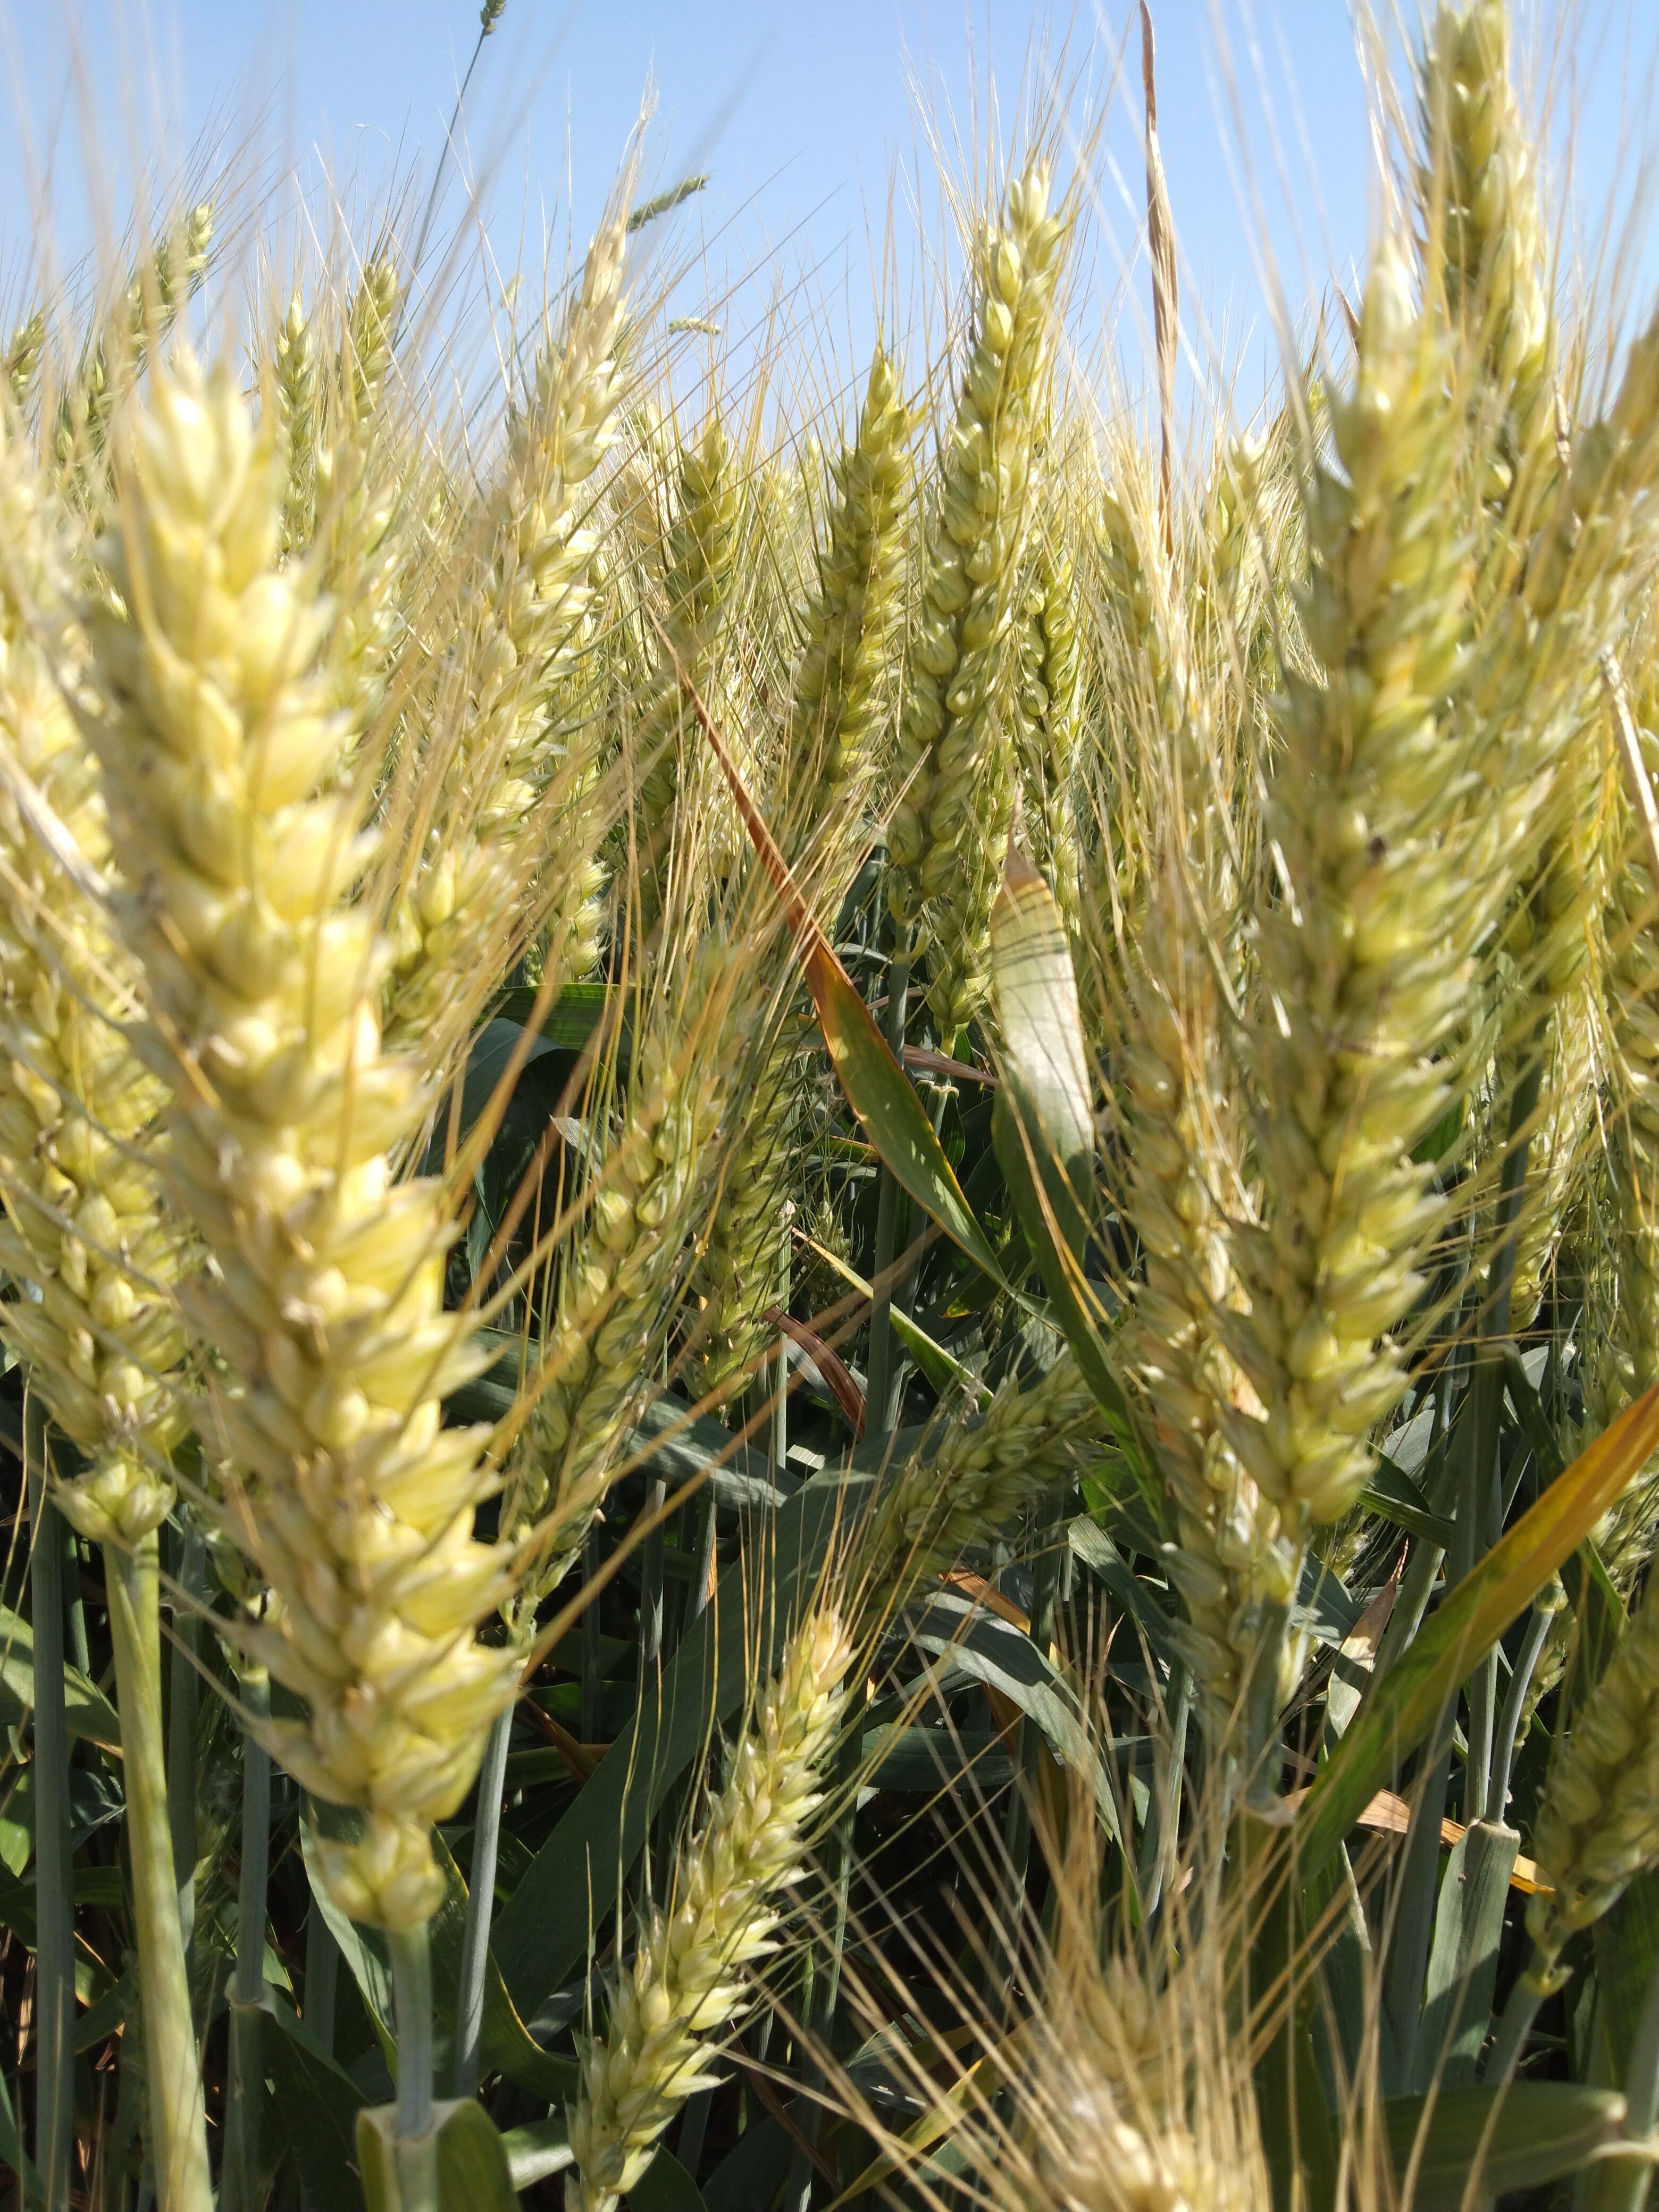 夏邑县武农988，优质小麦种子，穗大粒多108粒左右。现在大量到货